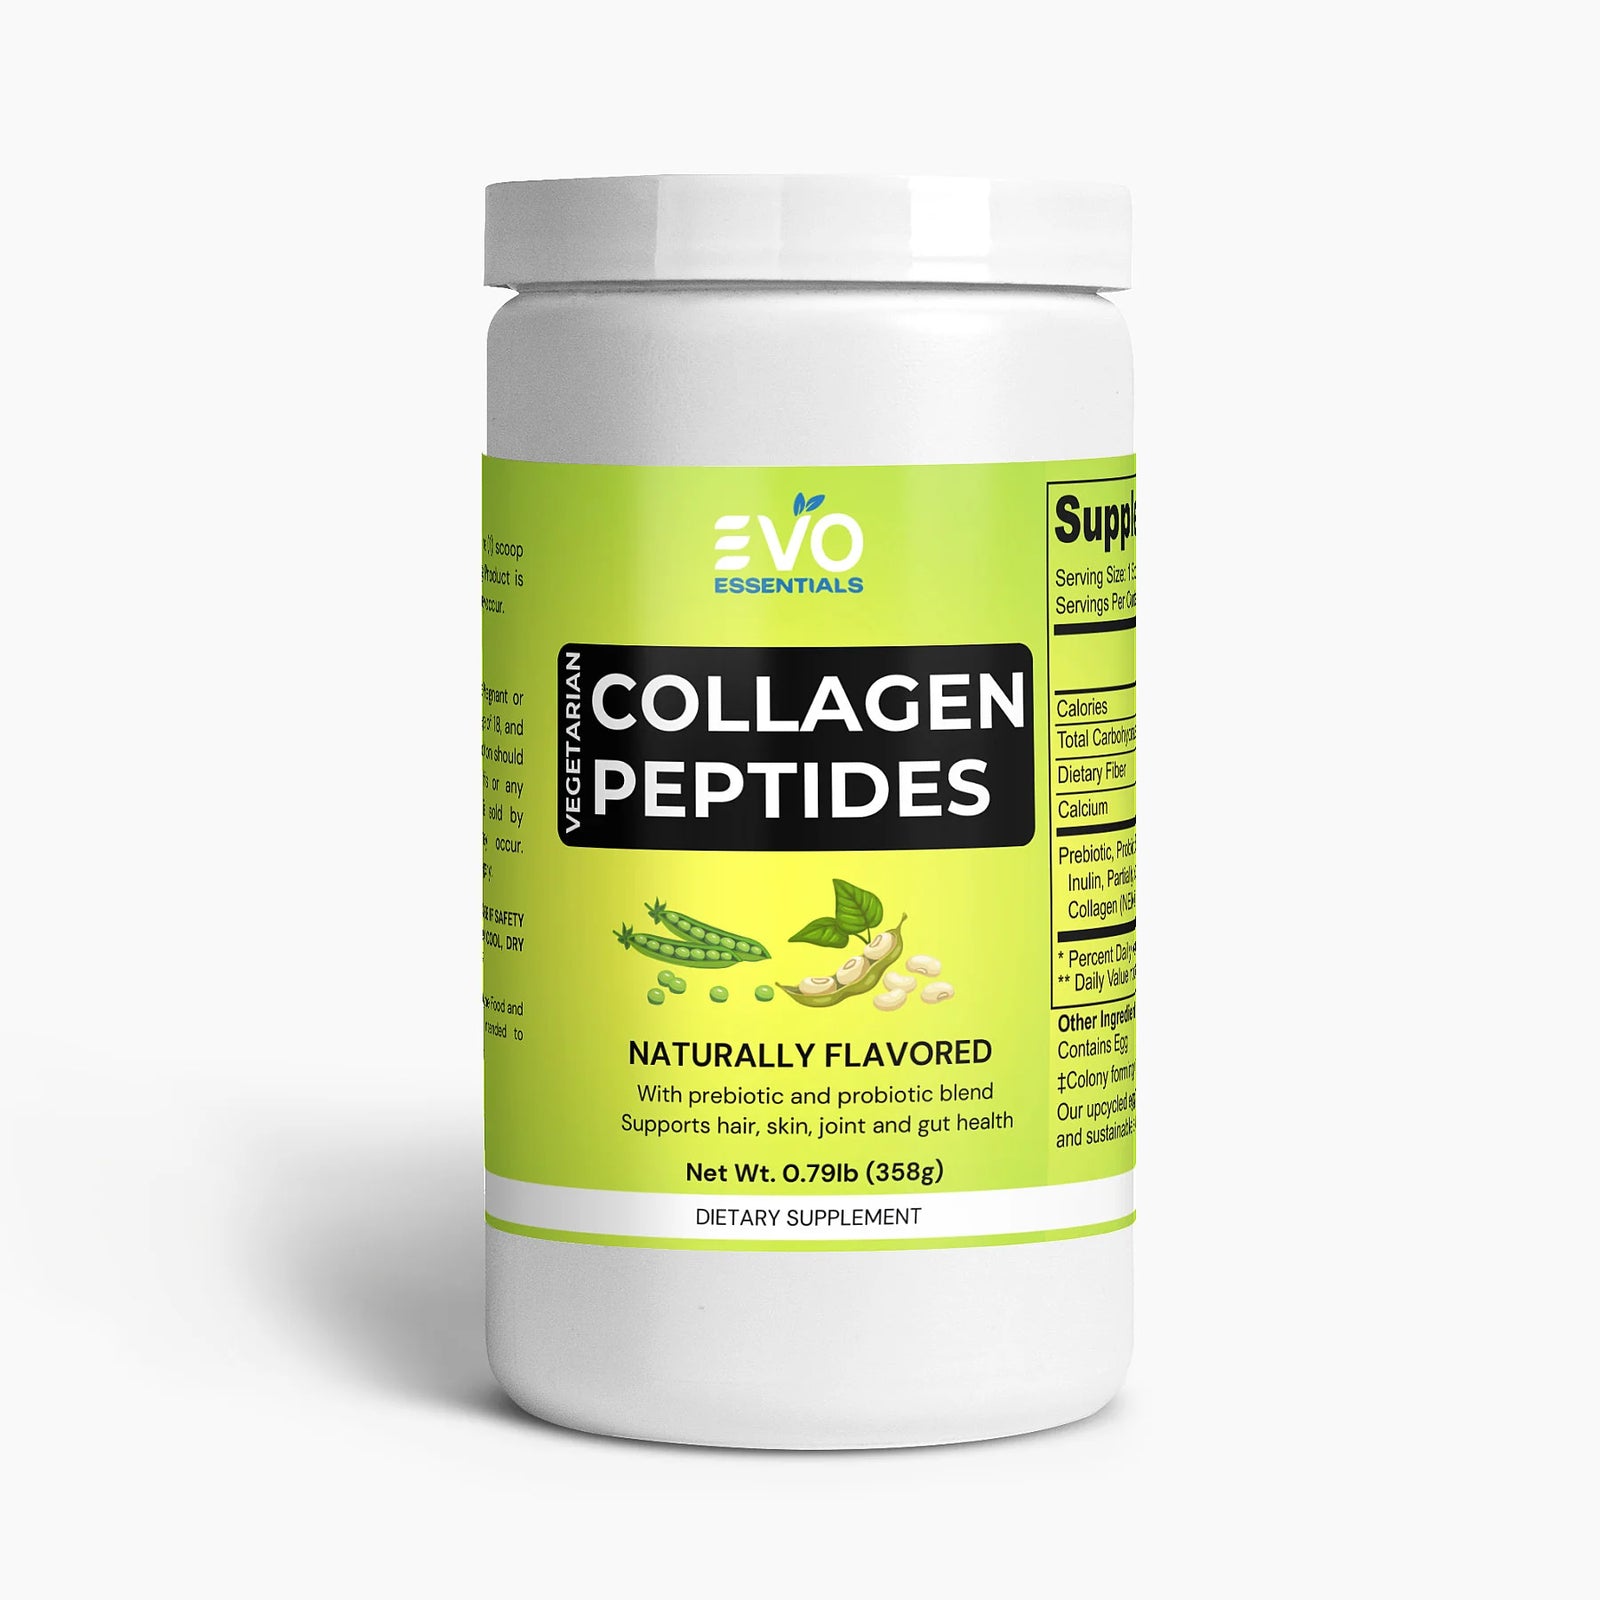 Vegetarian Collagen Peptides